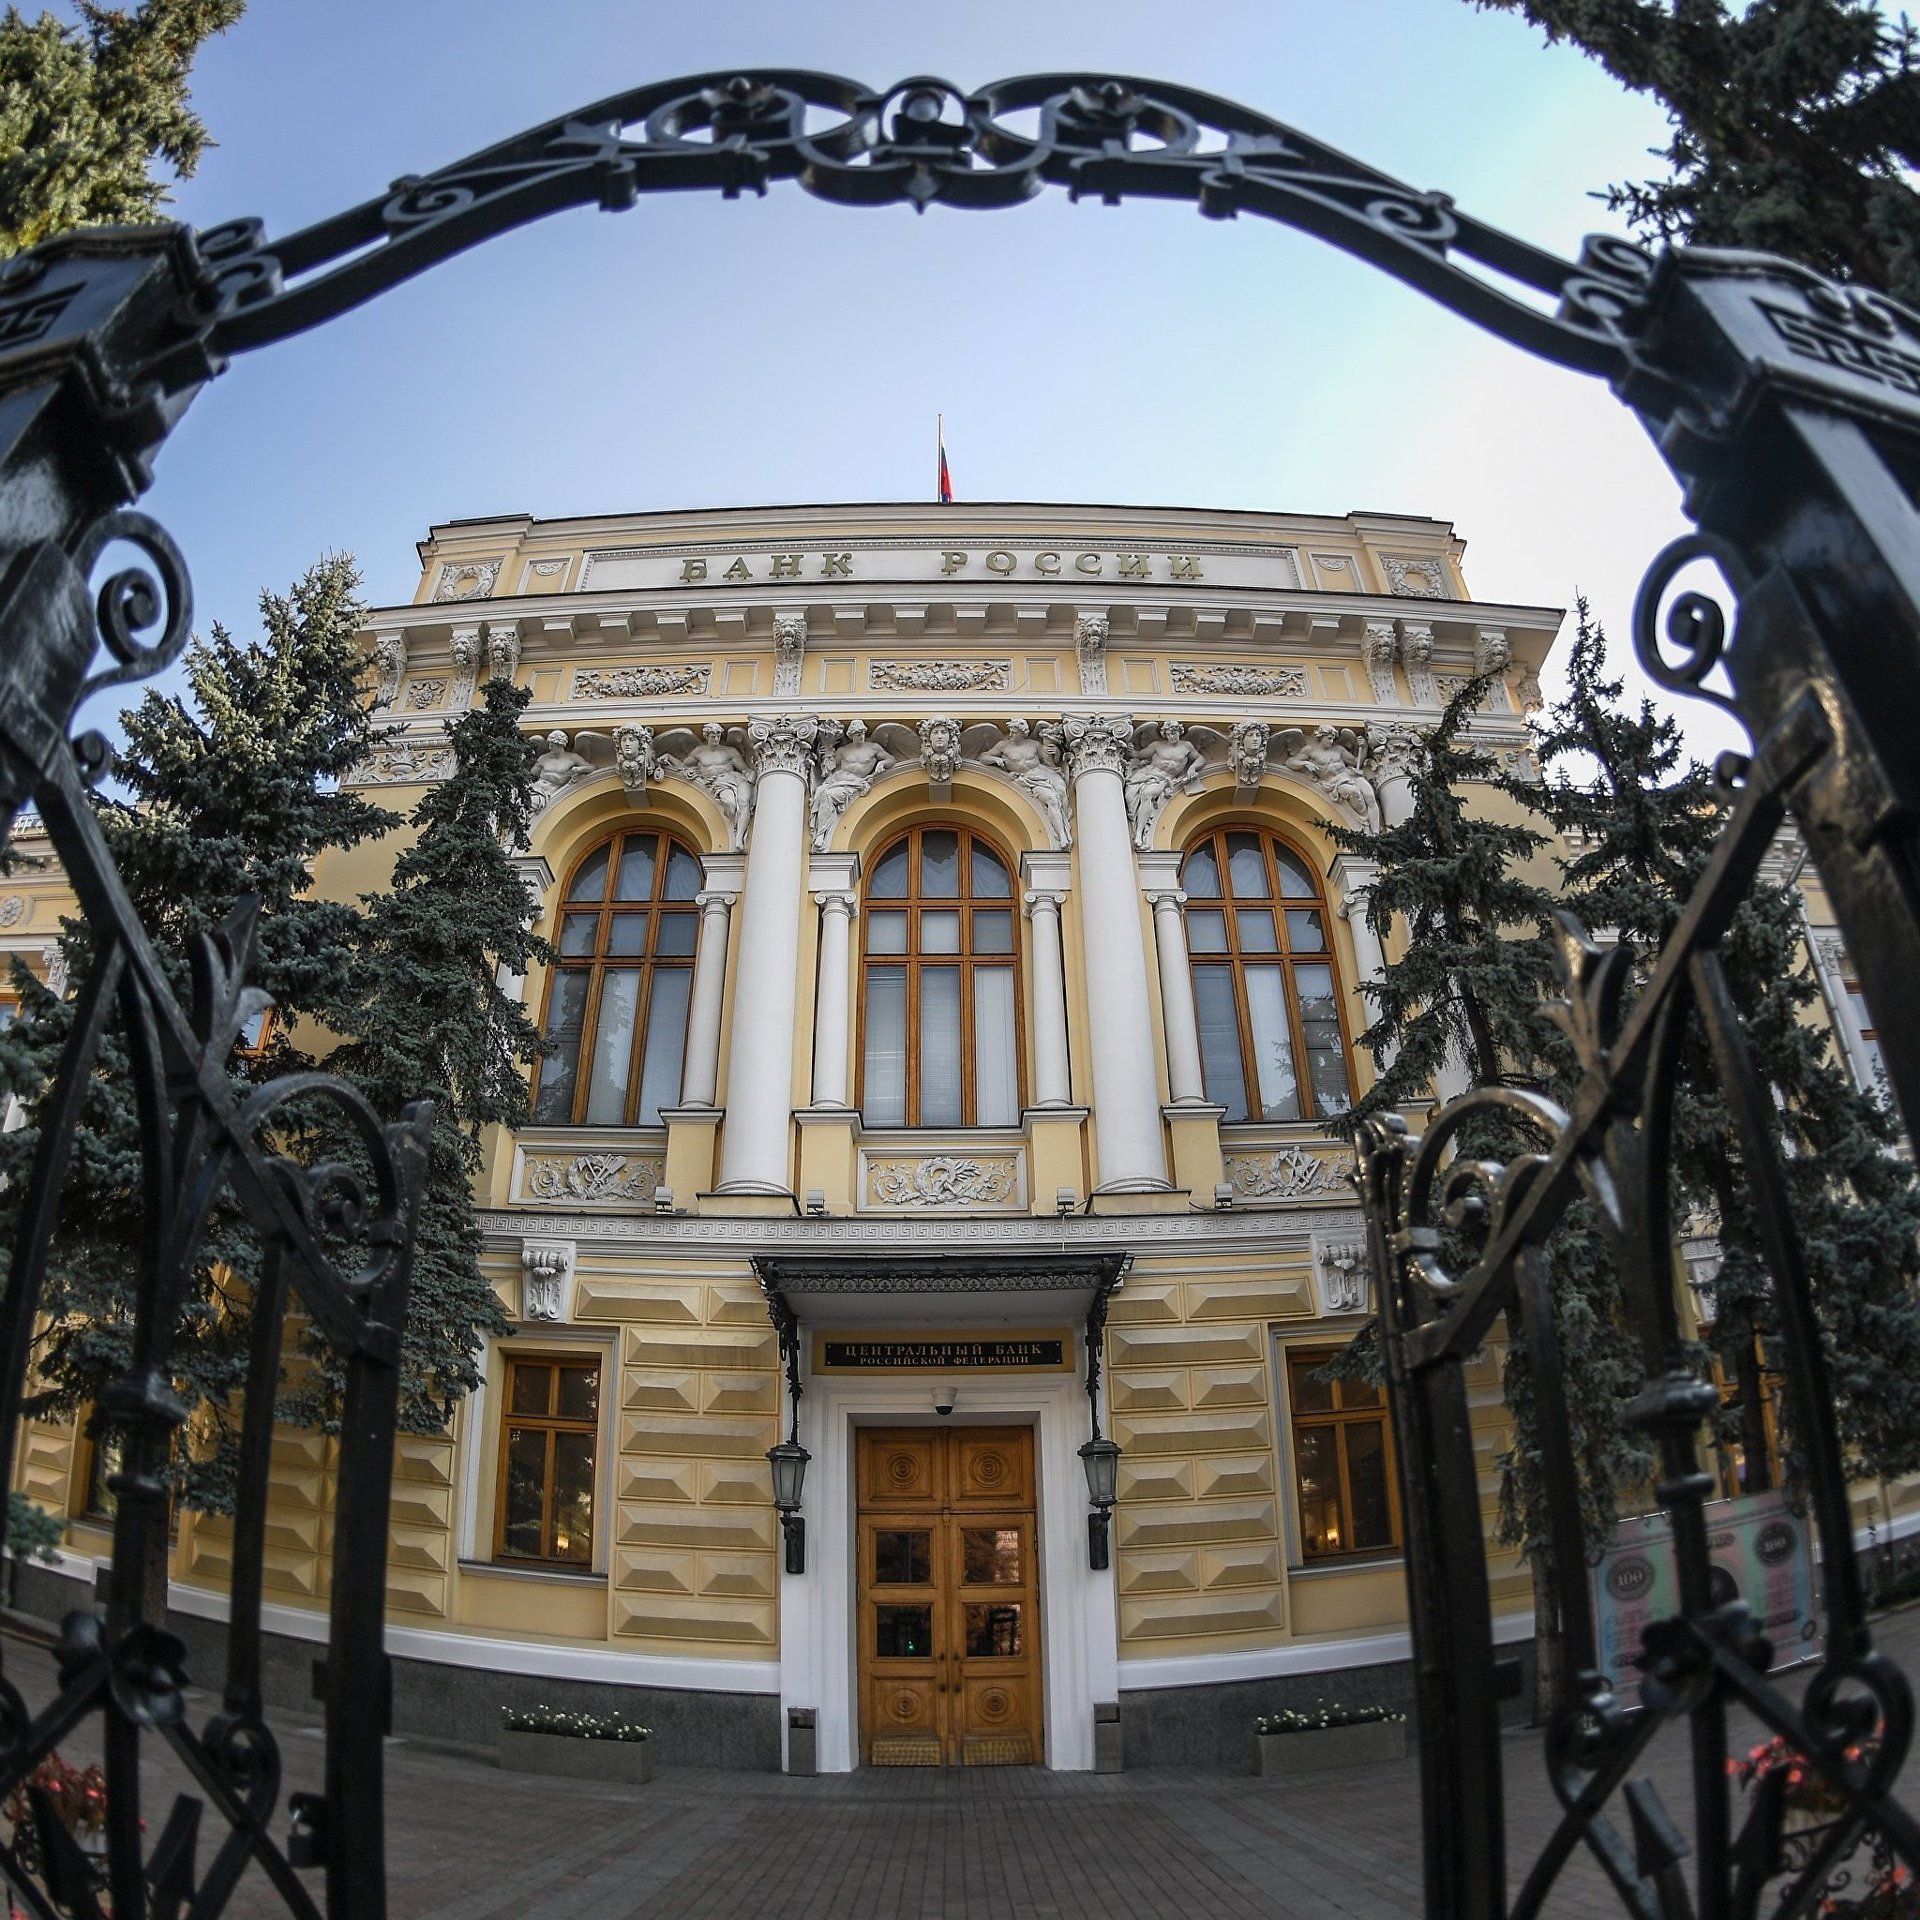 Реферат: Центральный Банк в банковской системе России